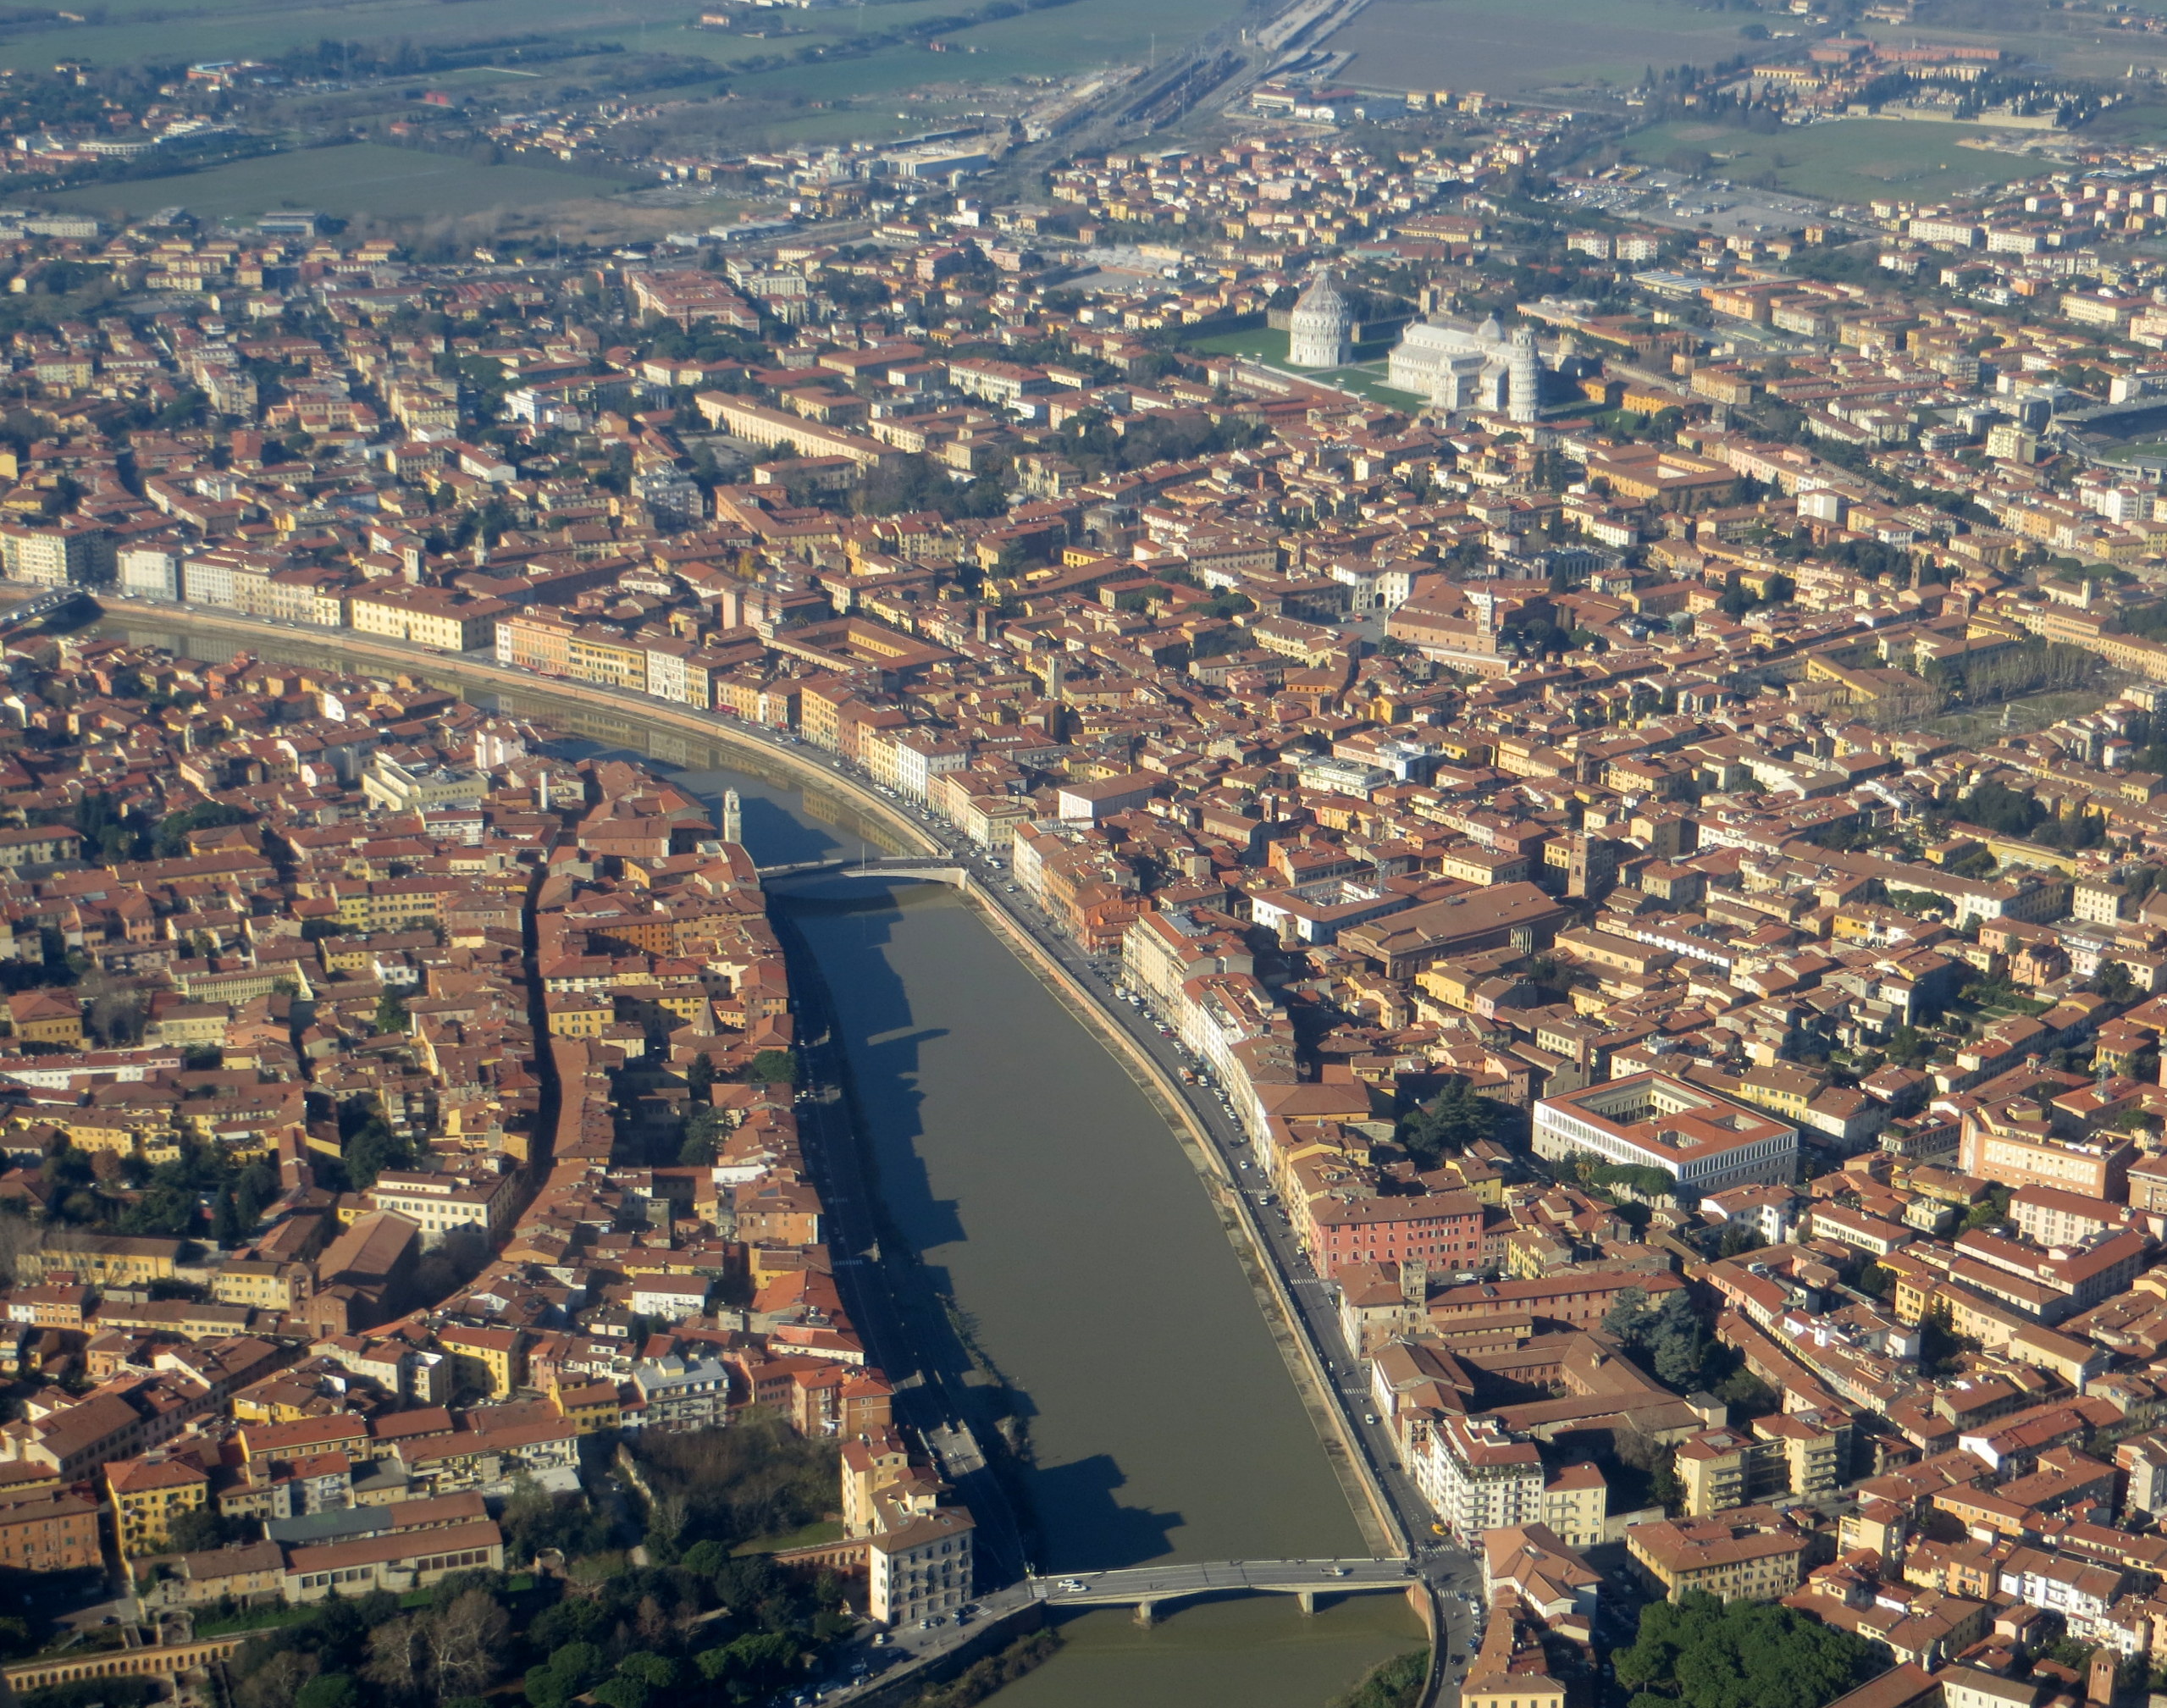 Pisa overview